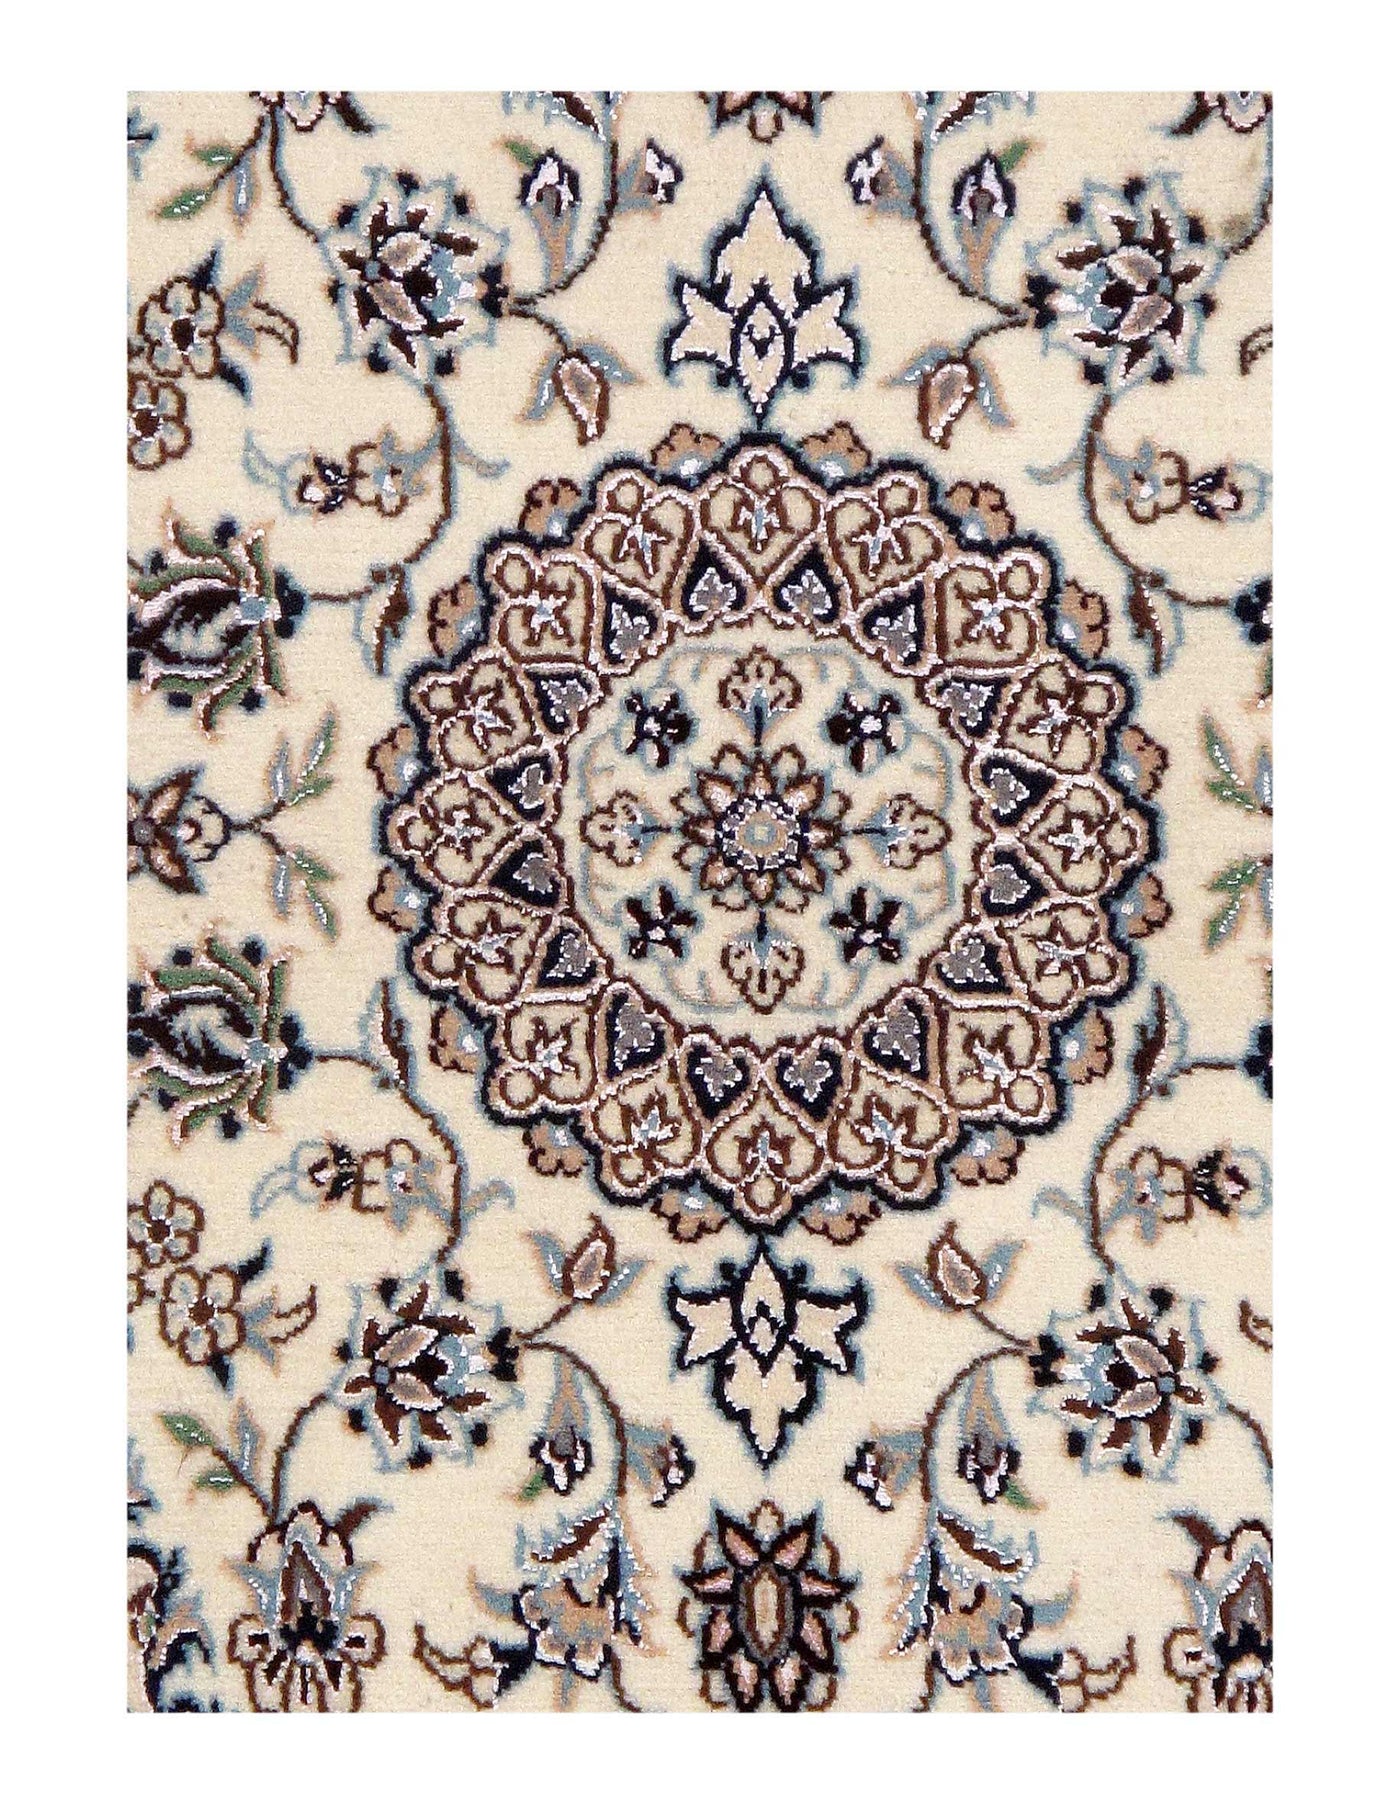 Ivory Persian Nain Silk & Wool Rug - 2' x 3'